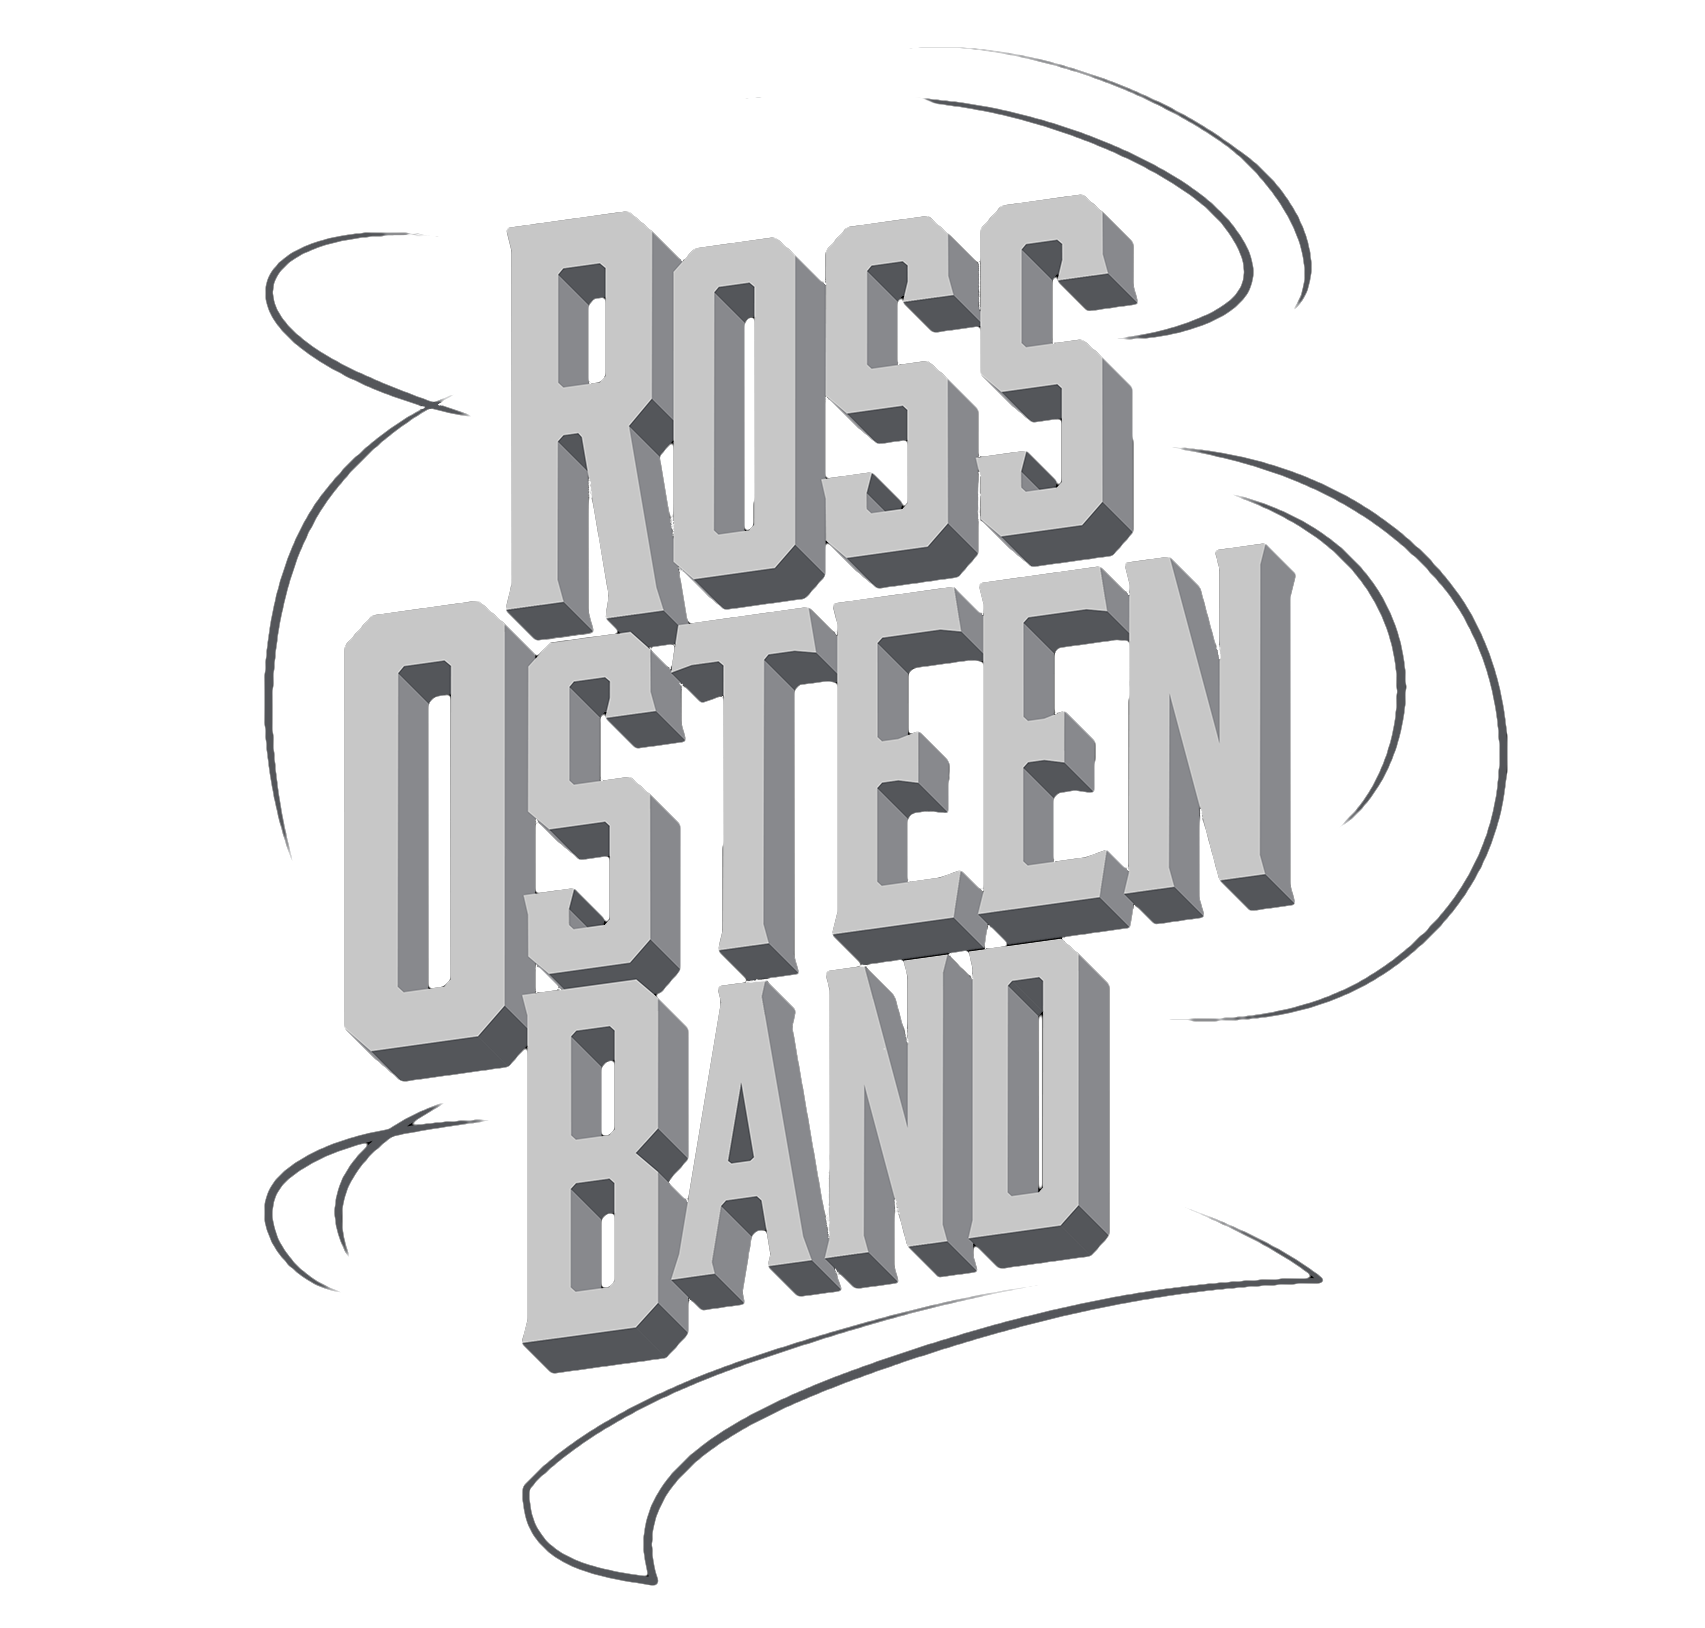 Ross Osteen Band